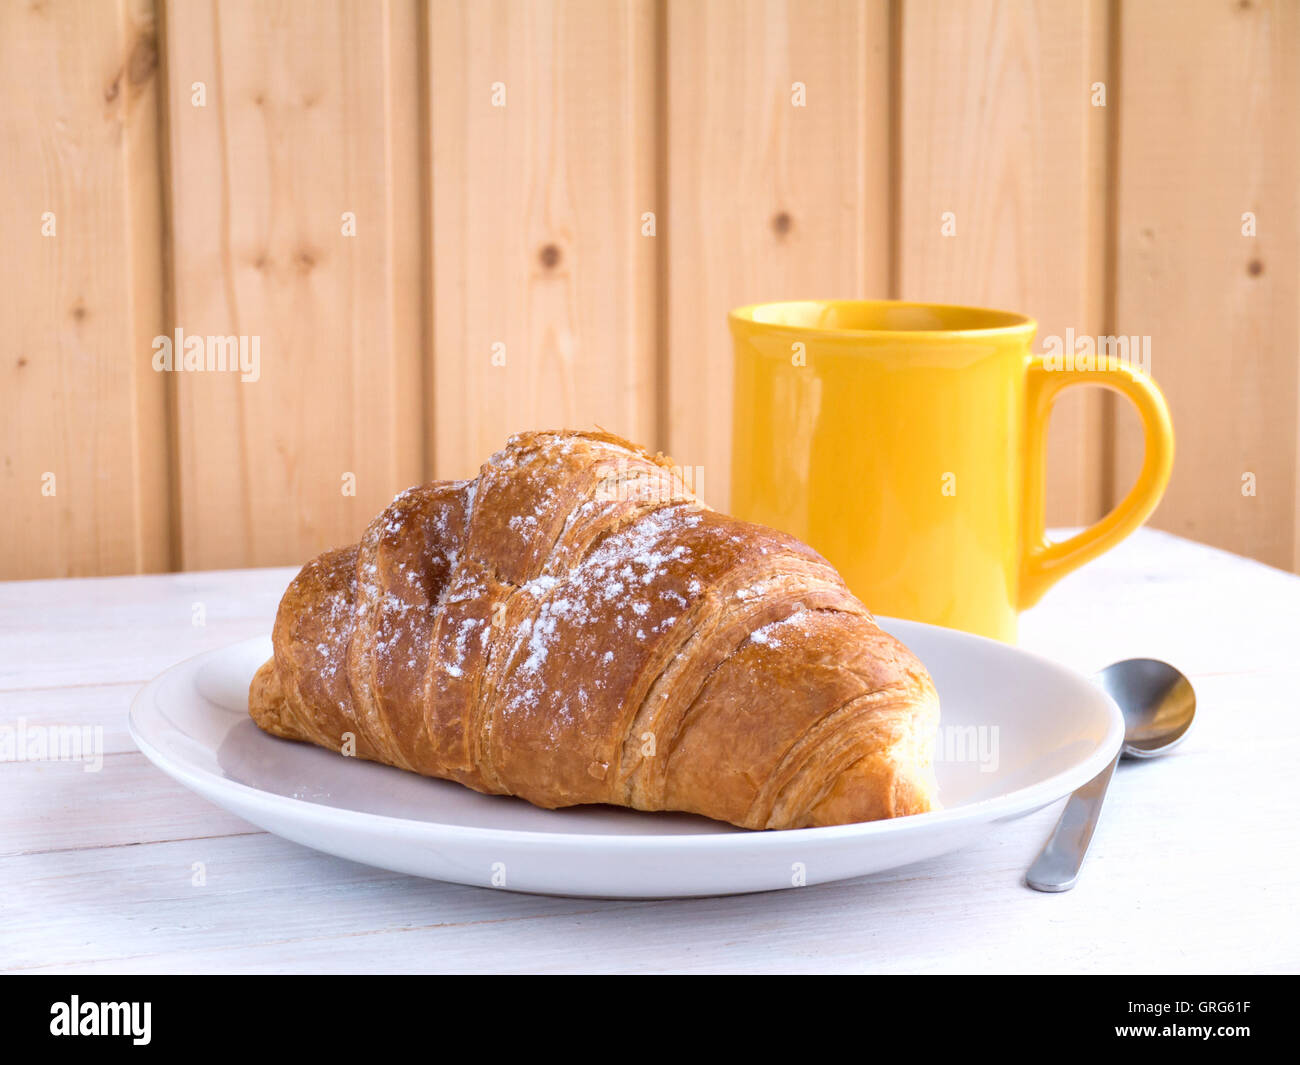 Petit-déjeuner continental et du café croissant dans la tasse jaune sur la table en bois blanc Banque D'Images